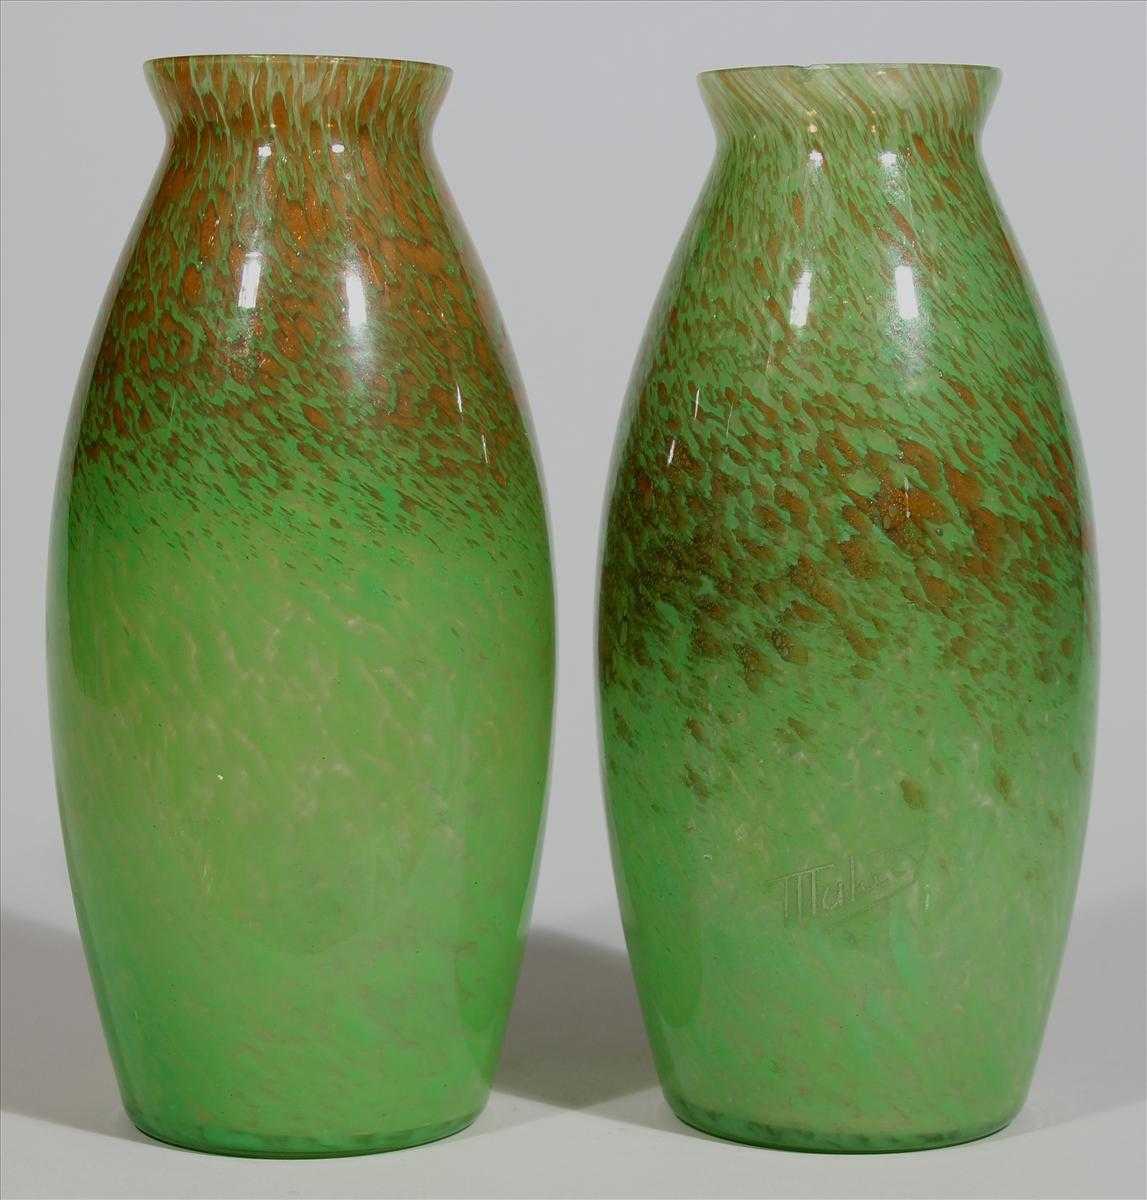 Paar Vasen. Farbloses Glas mit eingeschmolzenen Farbkröseln in Grün und Orange-braun. 1x Mündung